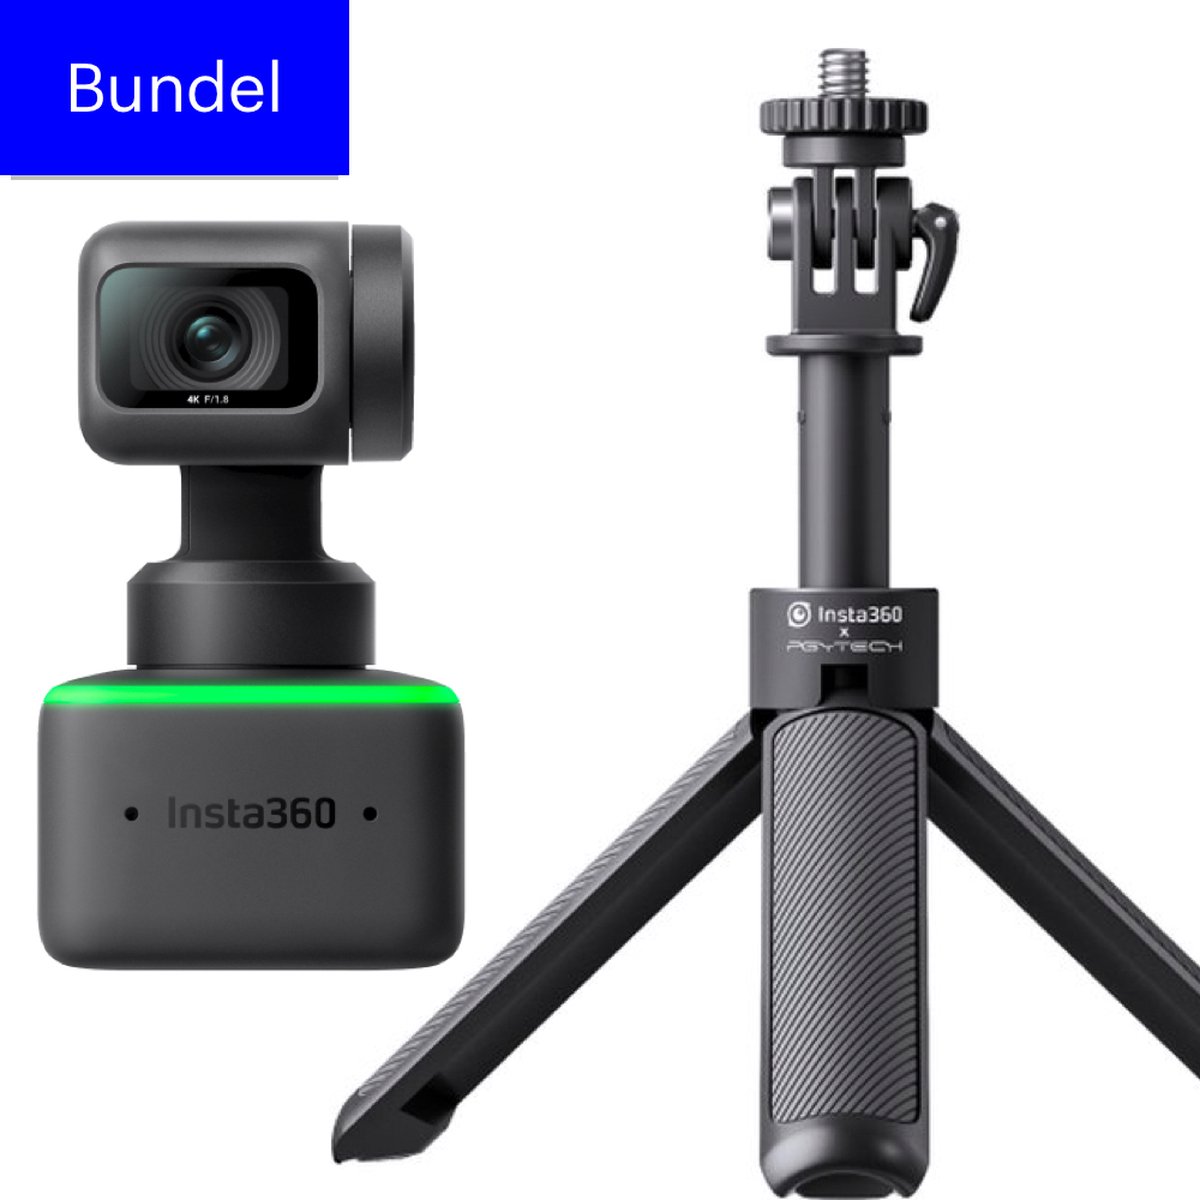 Insta360 Link Stand Bundel - 4K Webcam met AI Facetracking - met Mini 2-in-1 Tripod